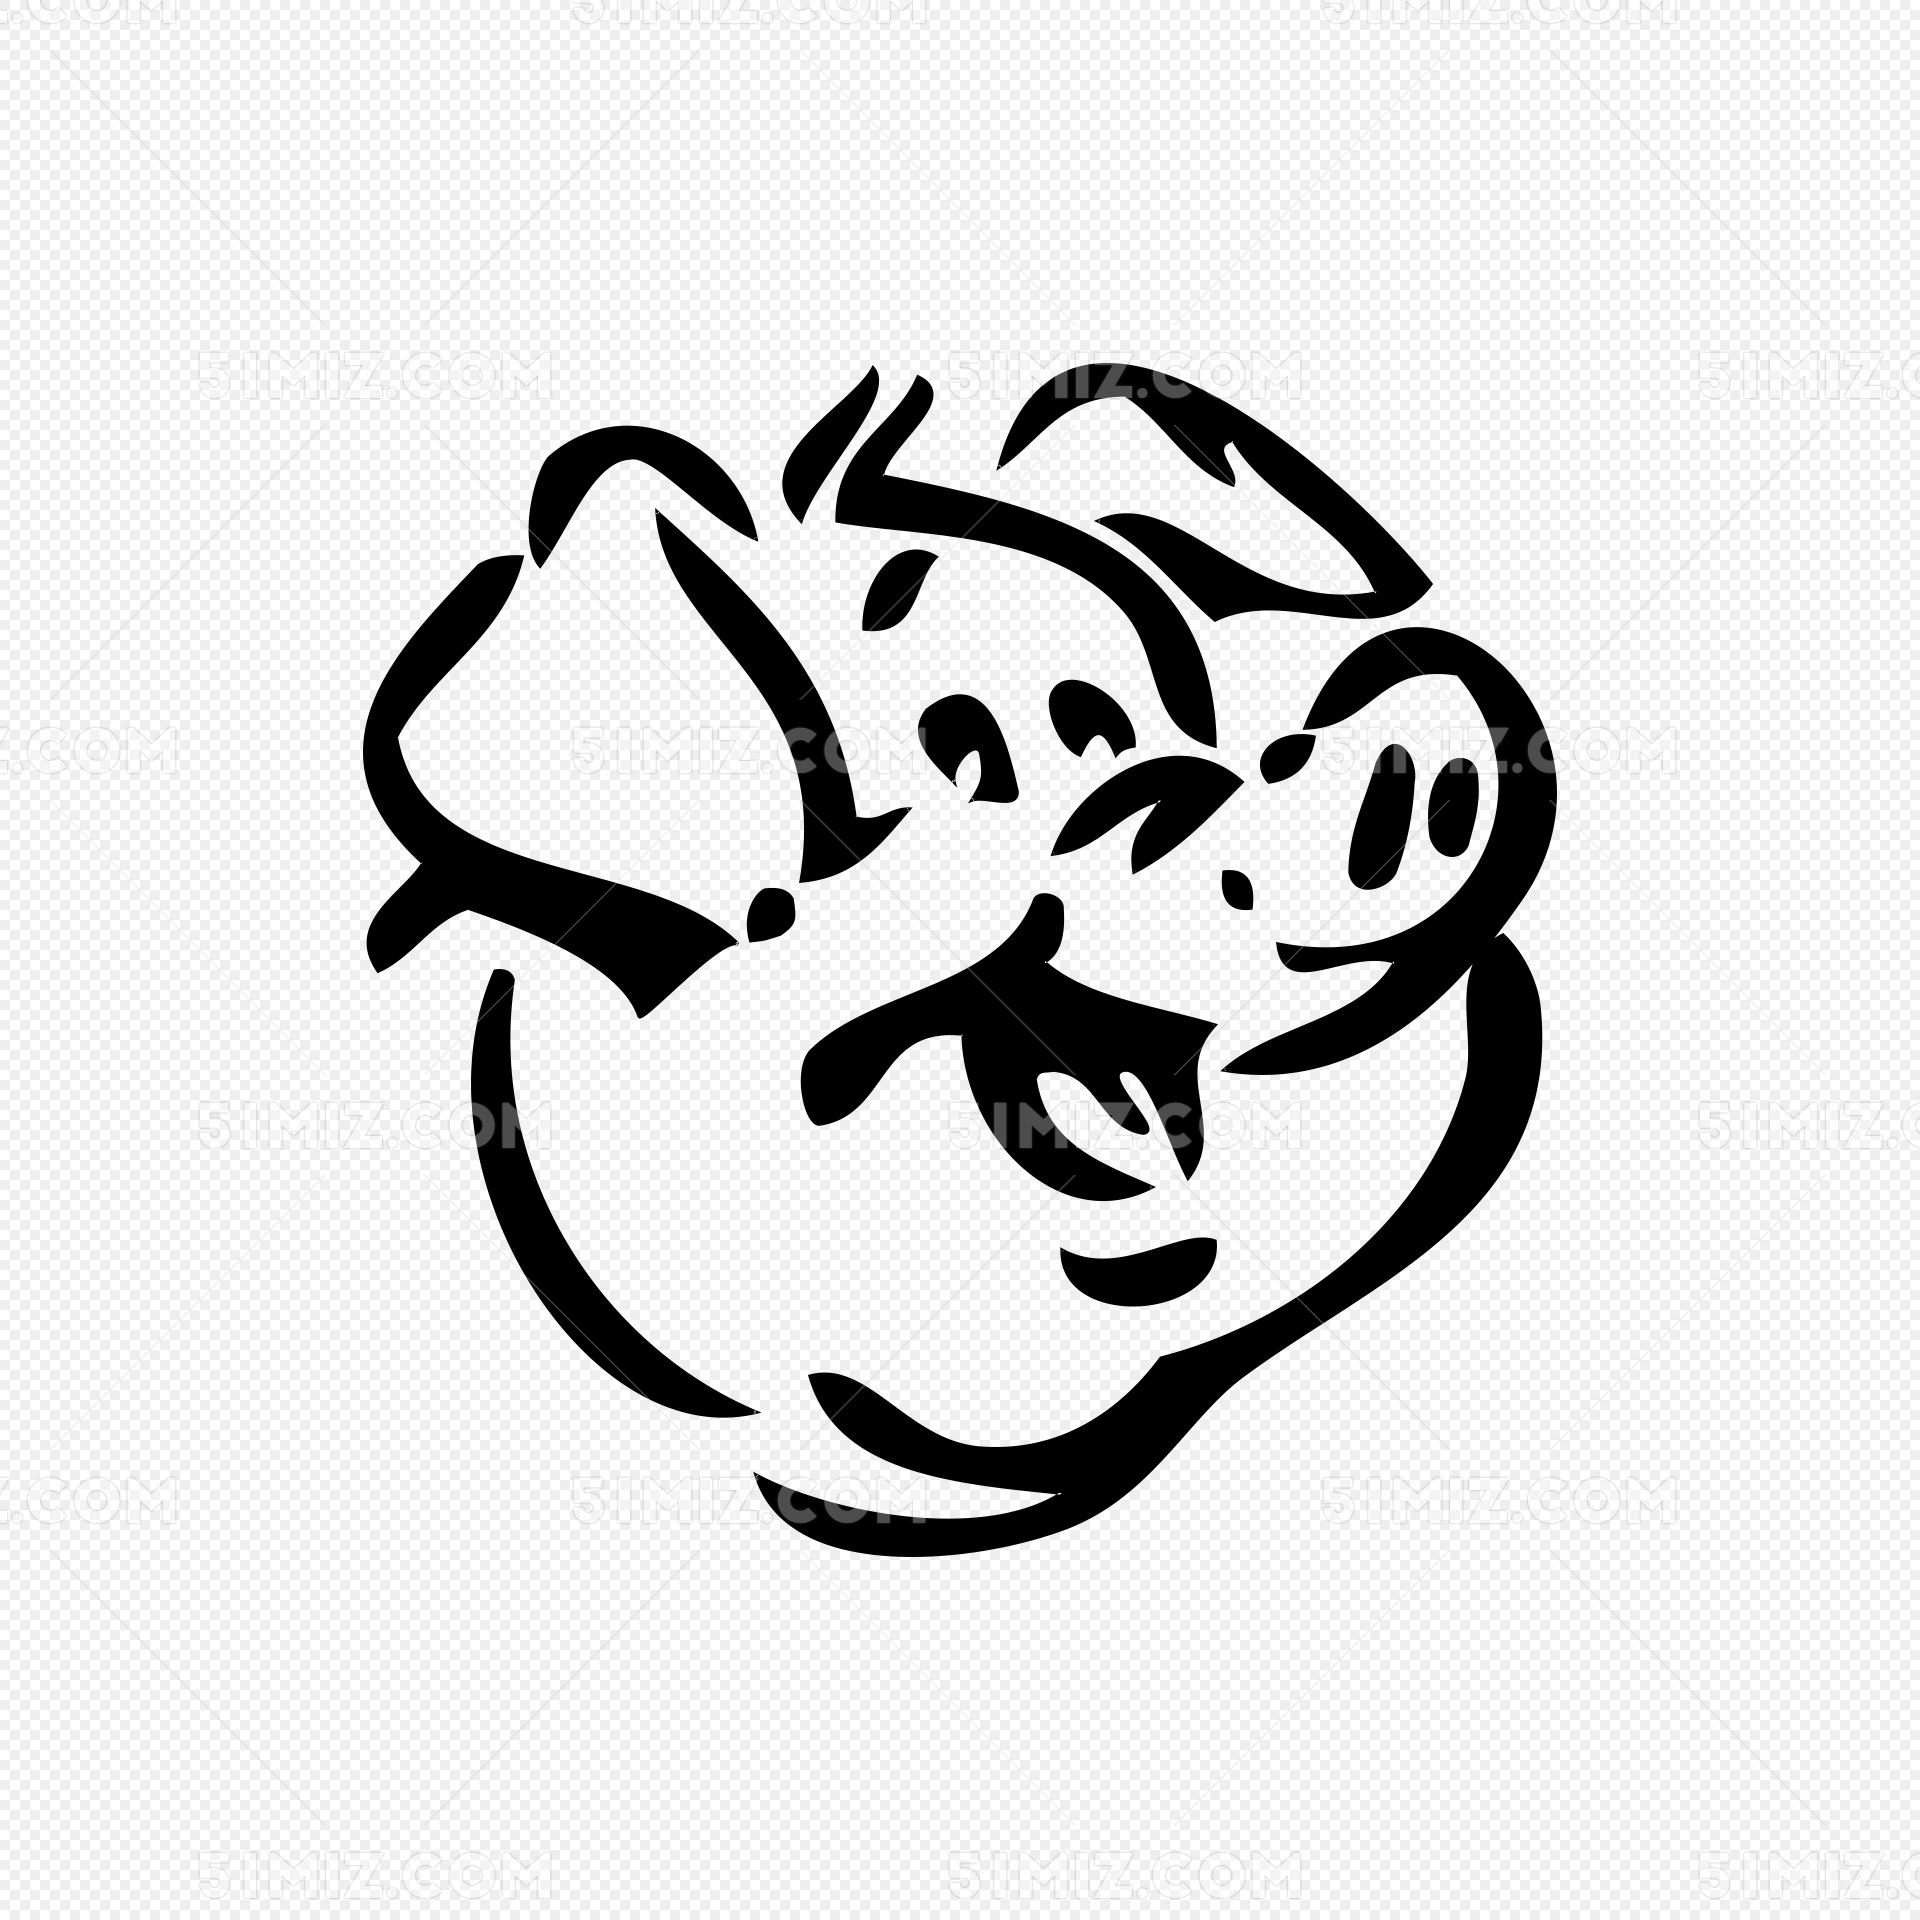 🐷 猪头 Emoji图片下载: 高清大图、动画图像和矢量图形 | EmojiAll